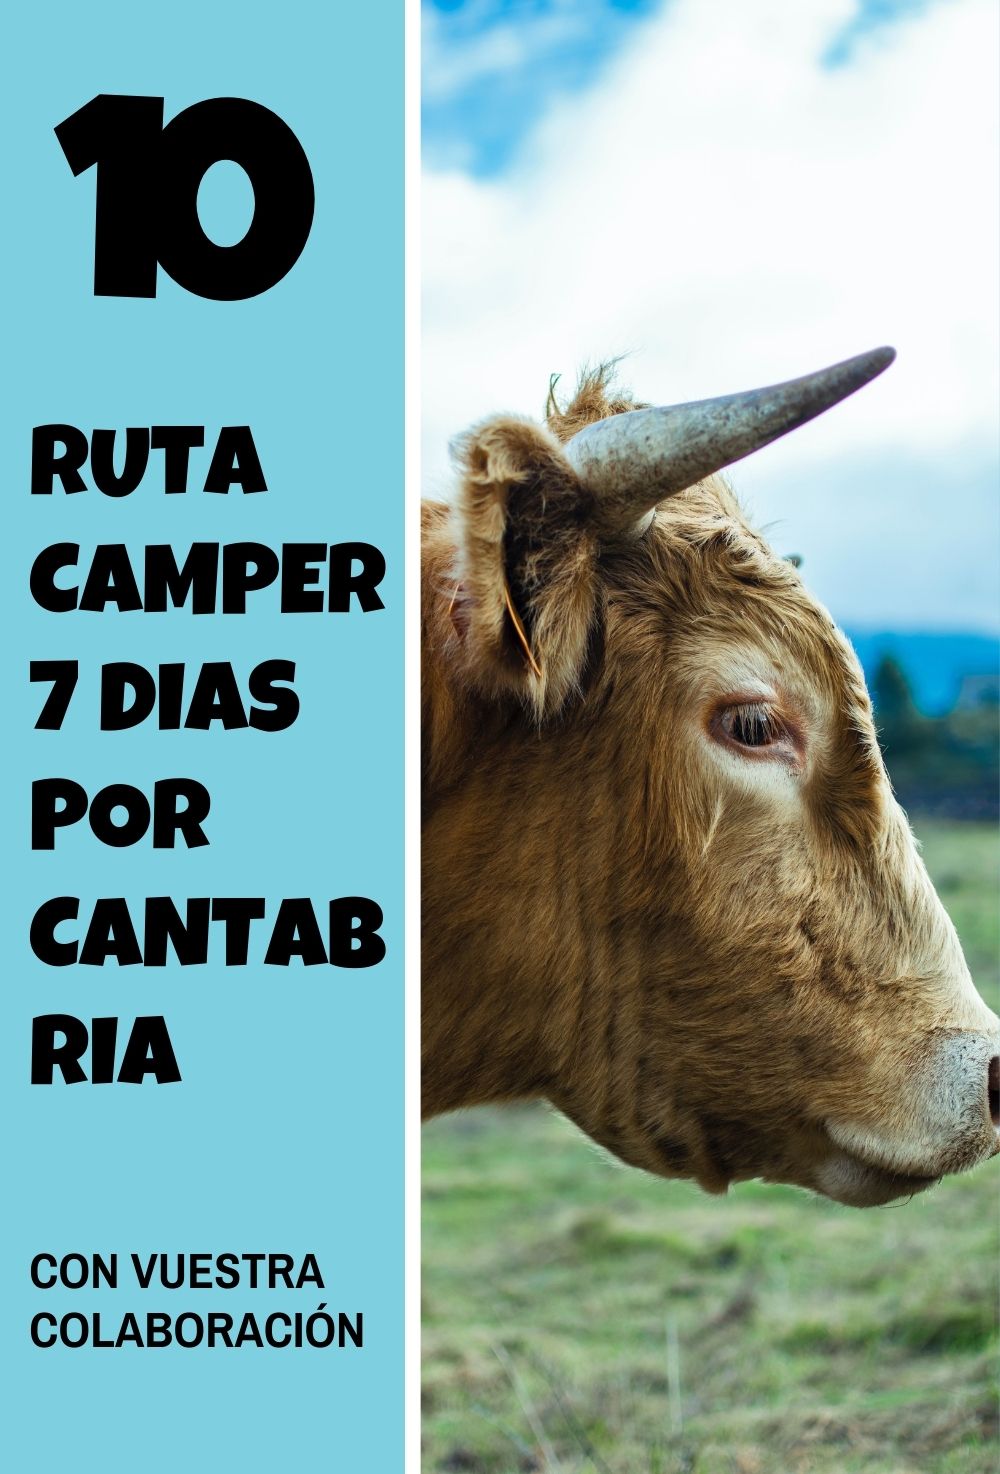 Ruta camper y autocaravanista durante 7 dias por Cantabria en Semana Santa